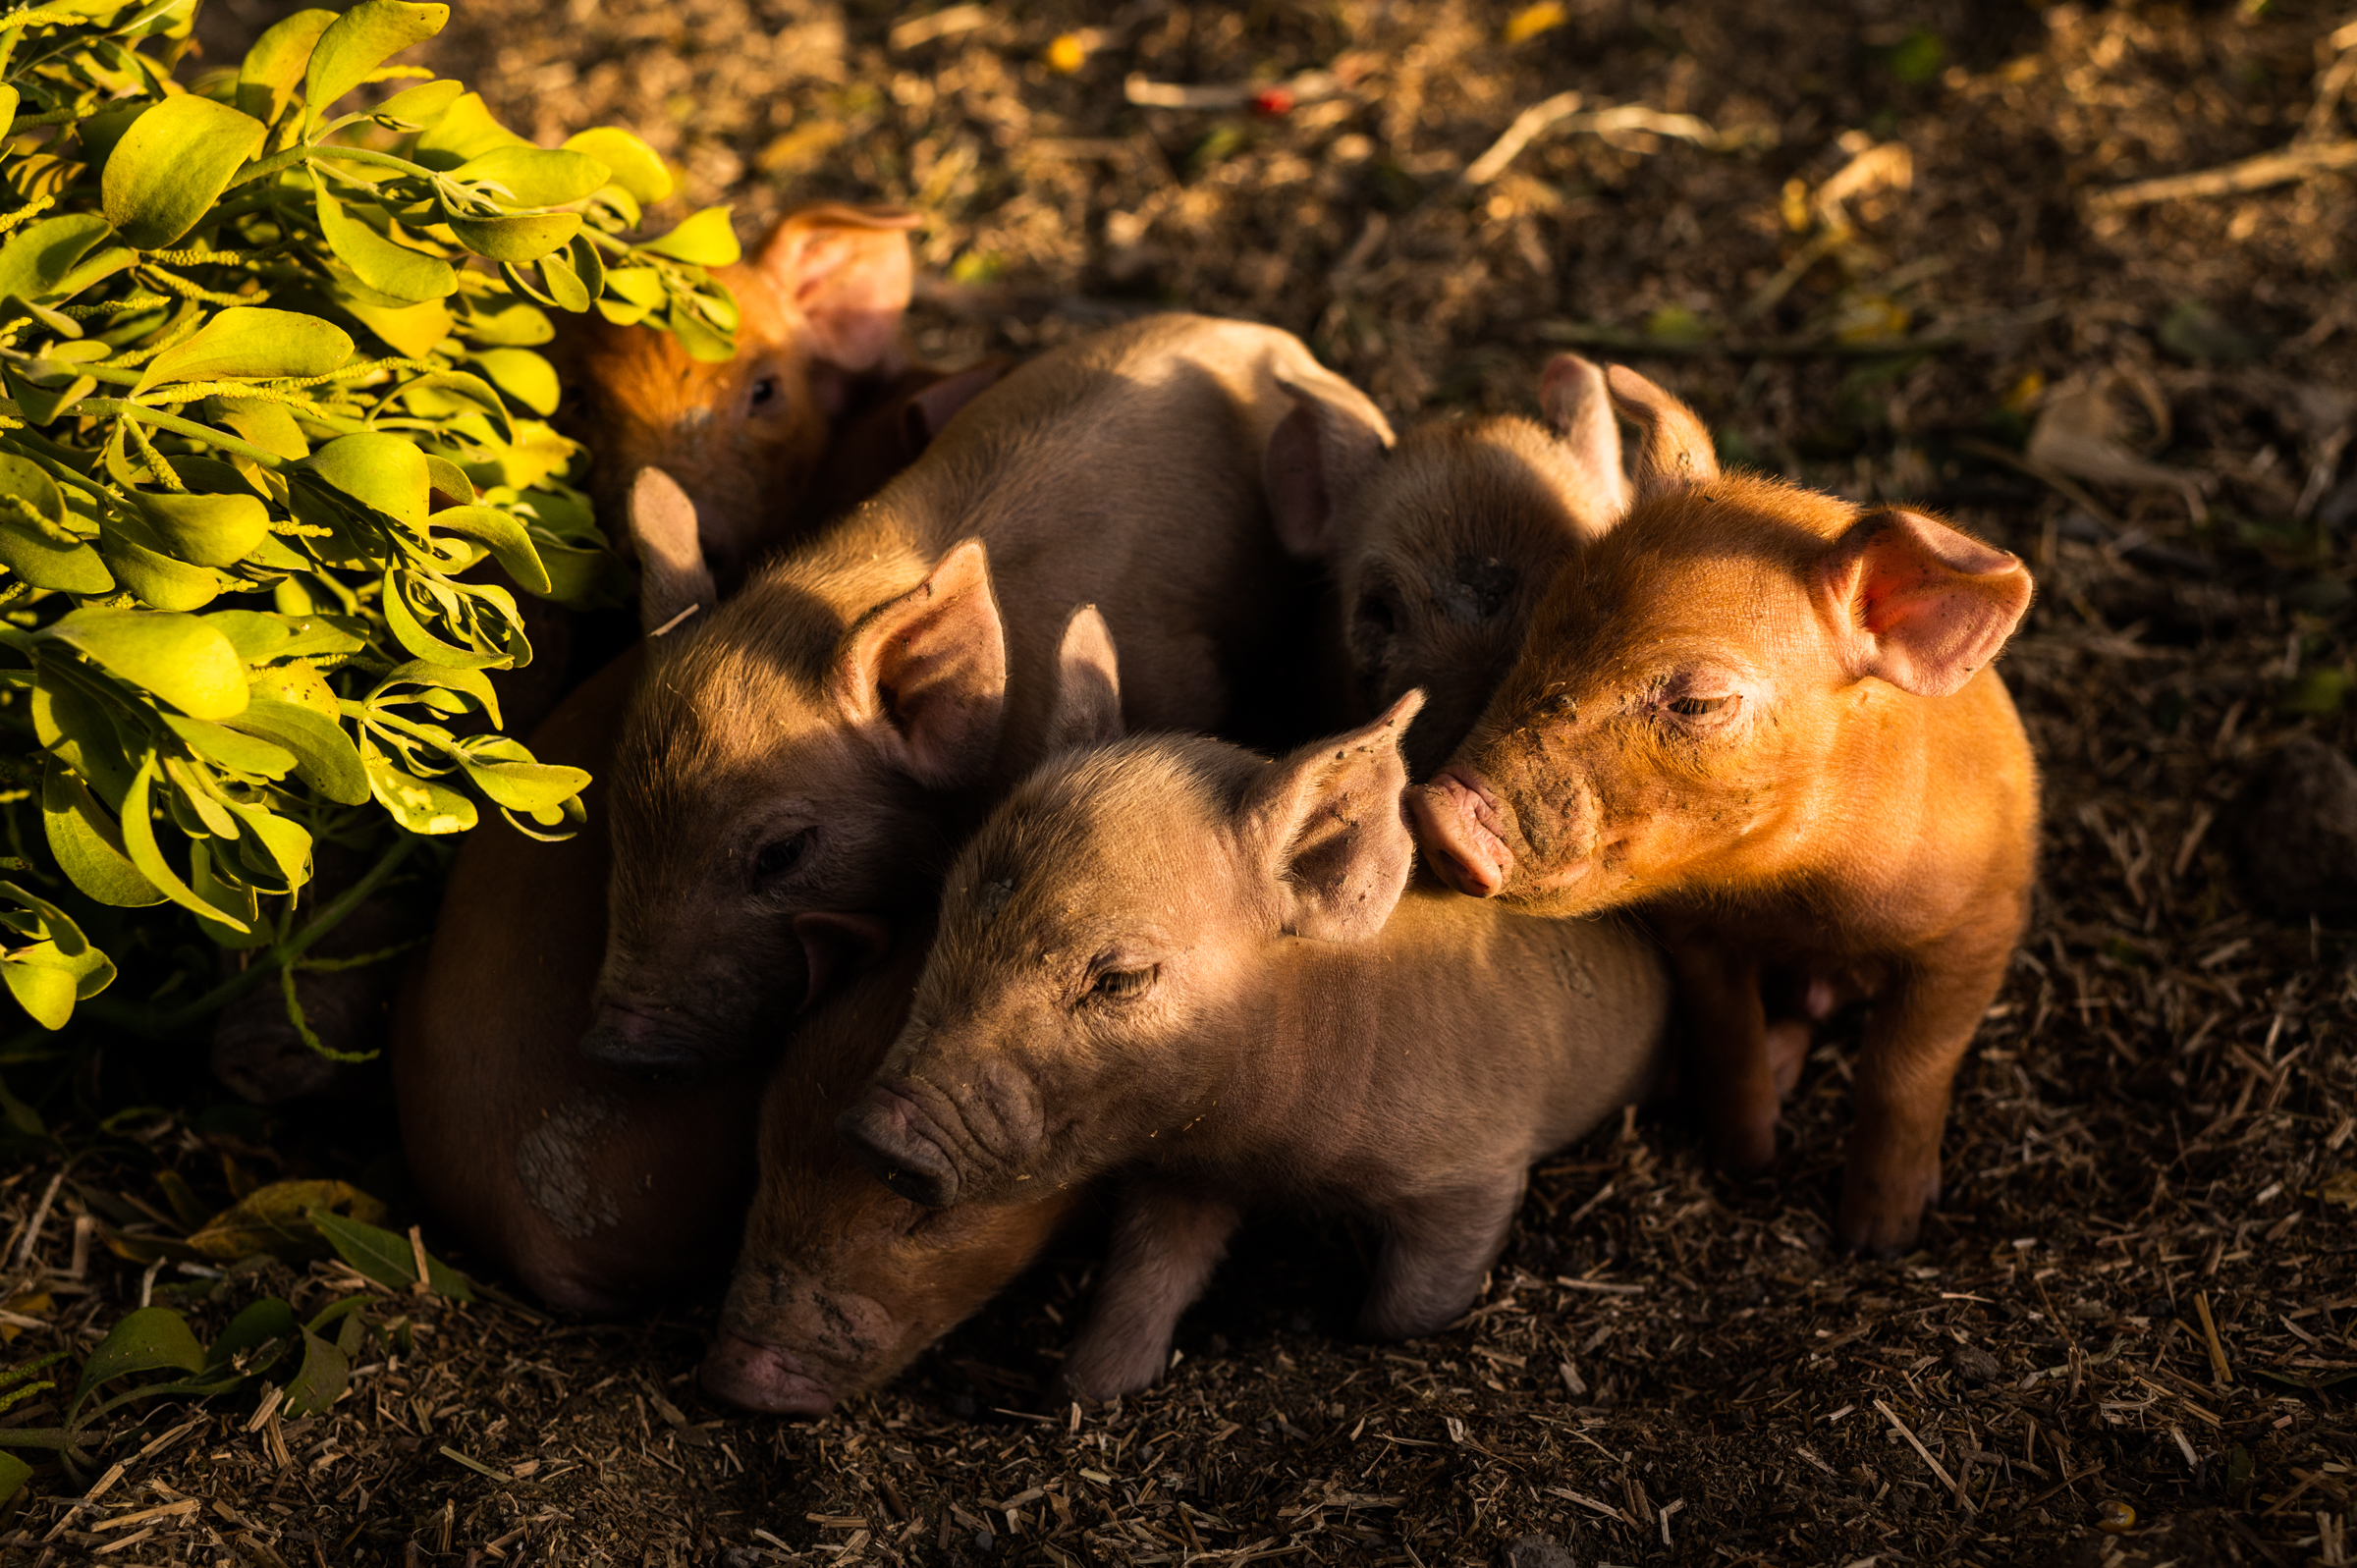 Newborn piglets huddled under a mistletoe bush